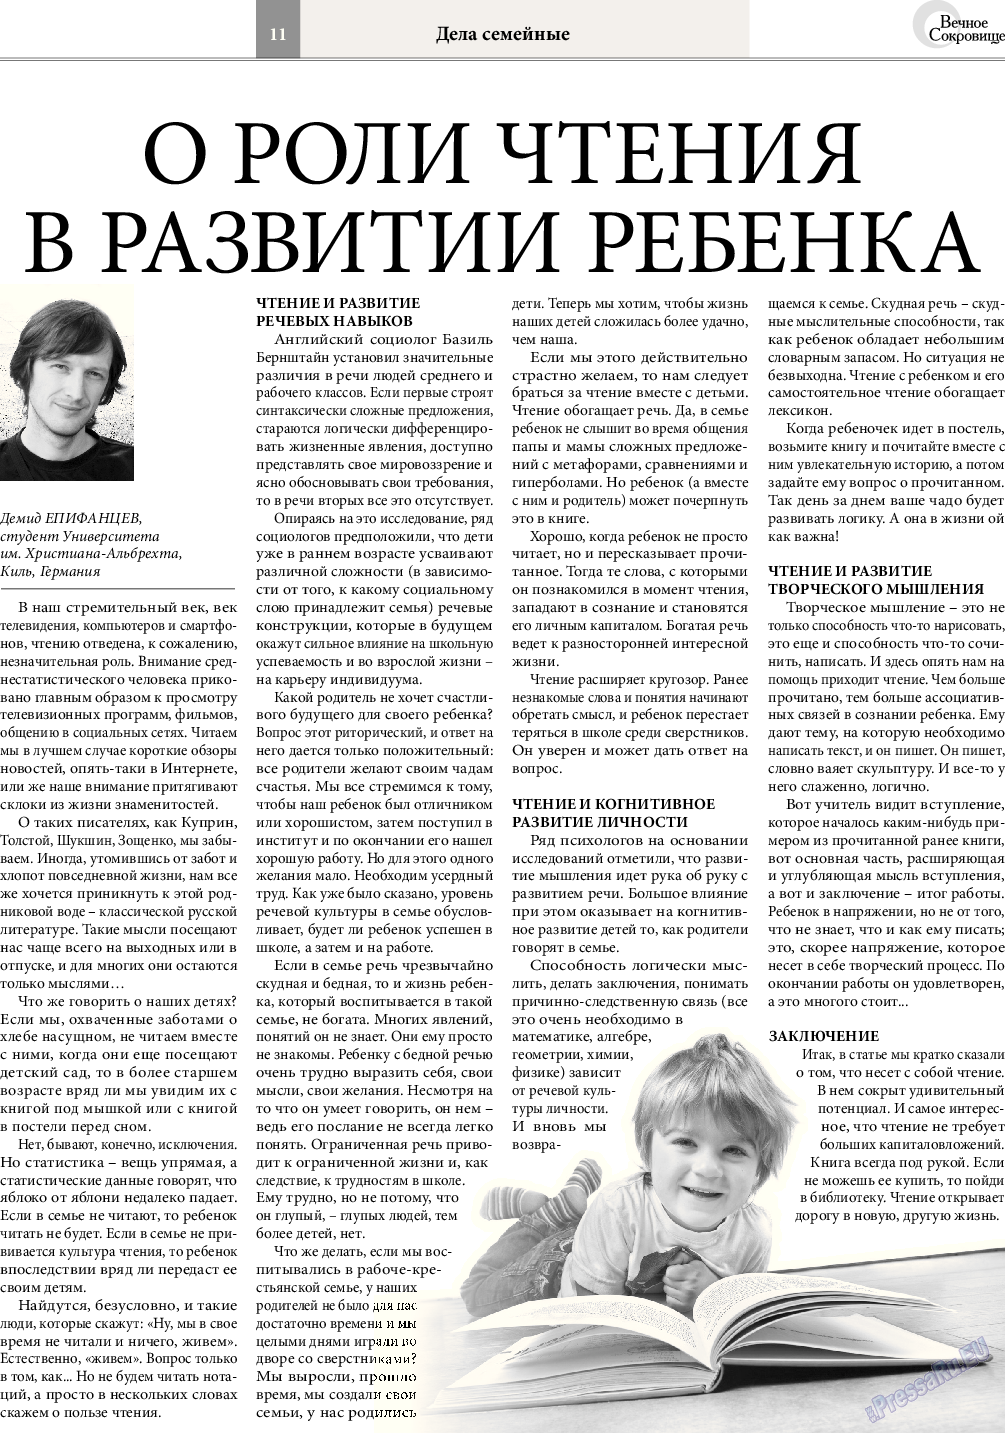 Вечное сокровище, газета. 2015 №4 стр.11